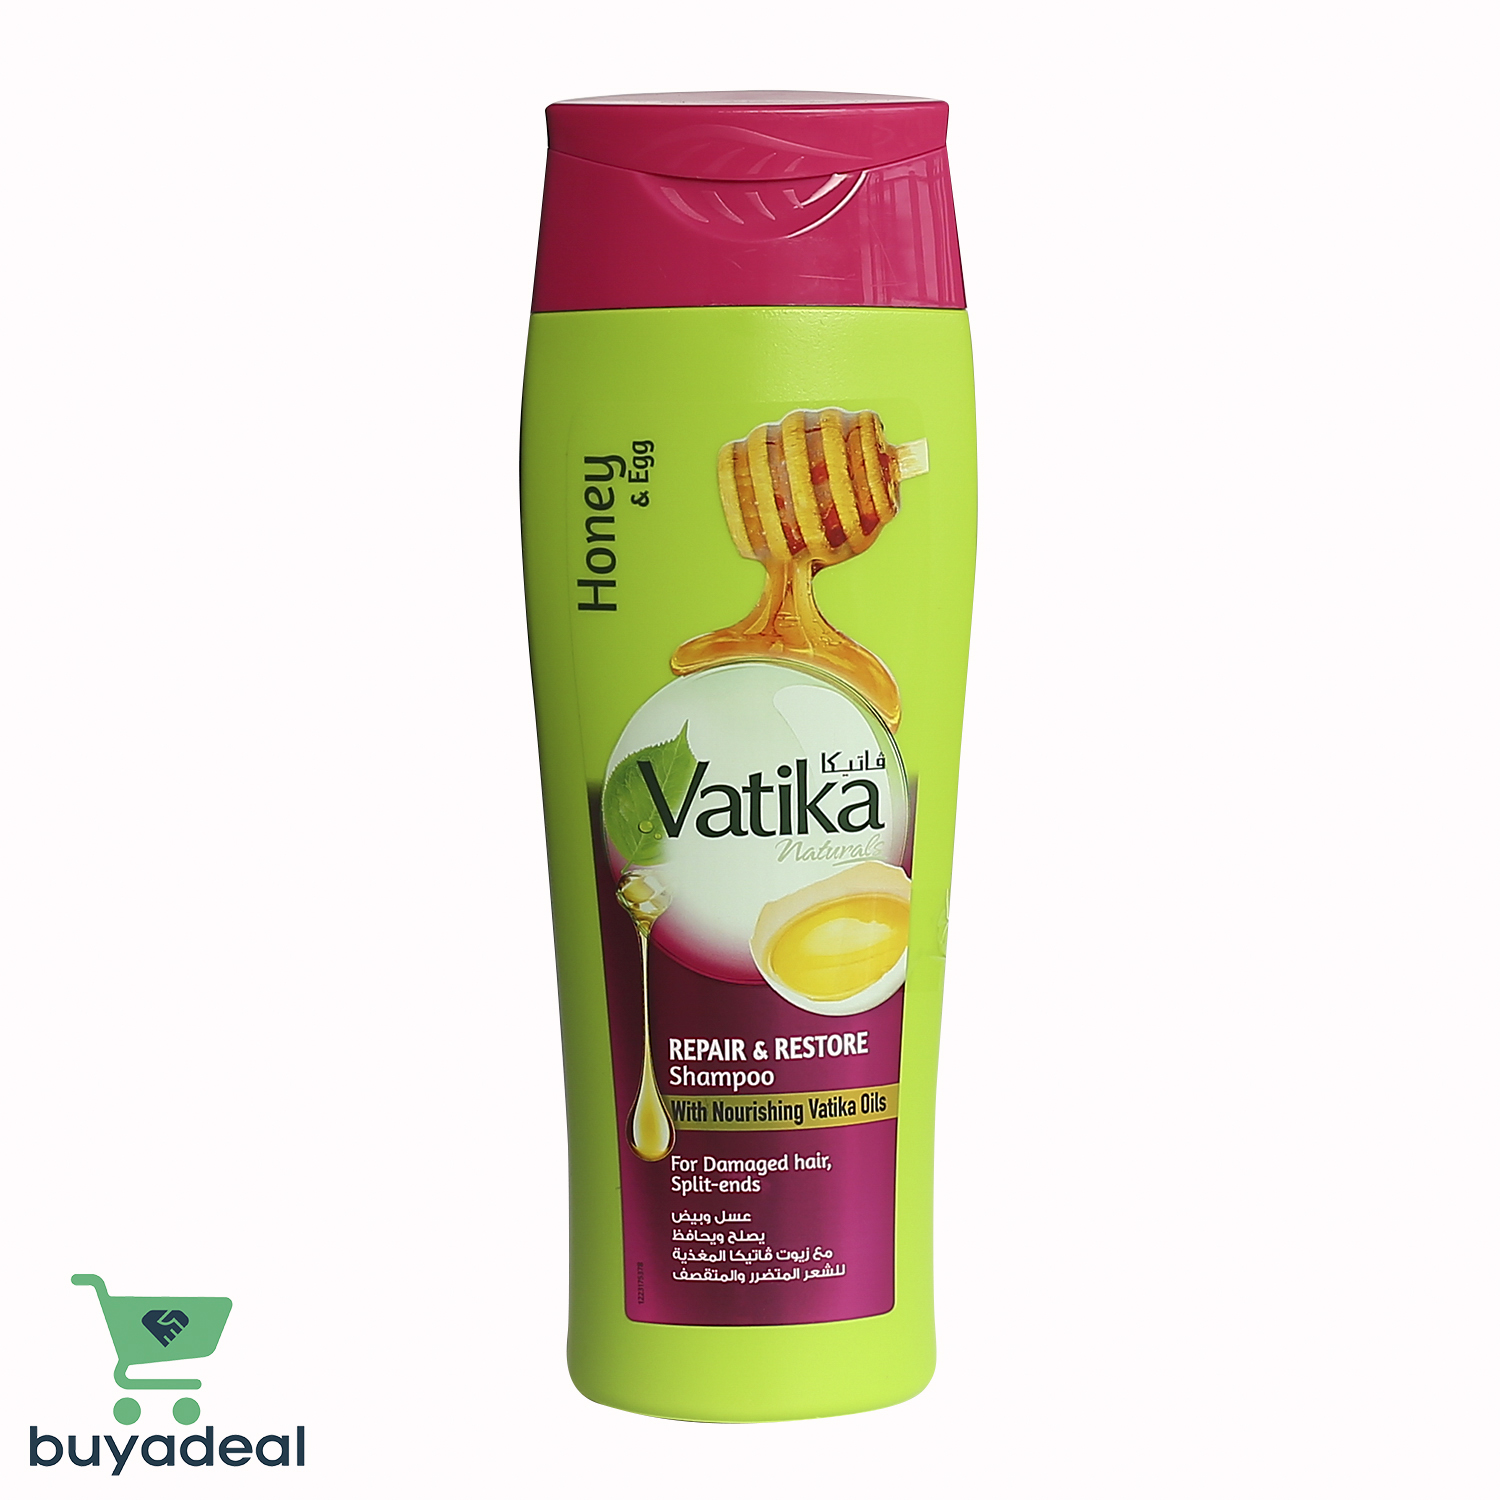 Buyadeal Product Vatika Repair & Restore Shampoo - Honey & Egg 400ml